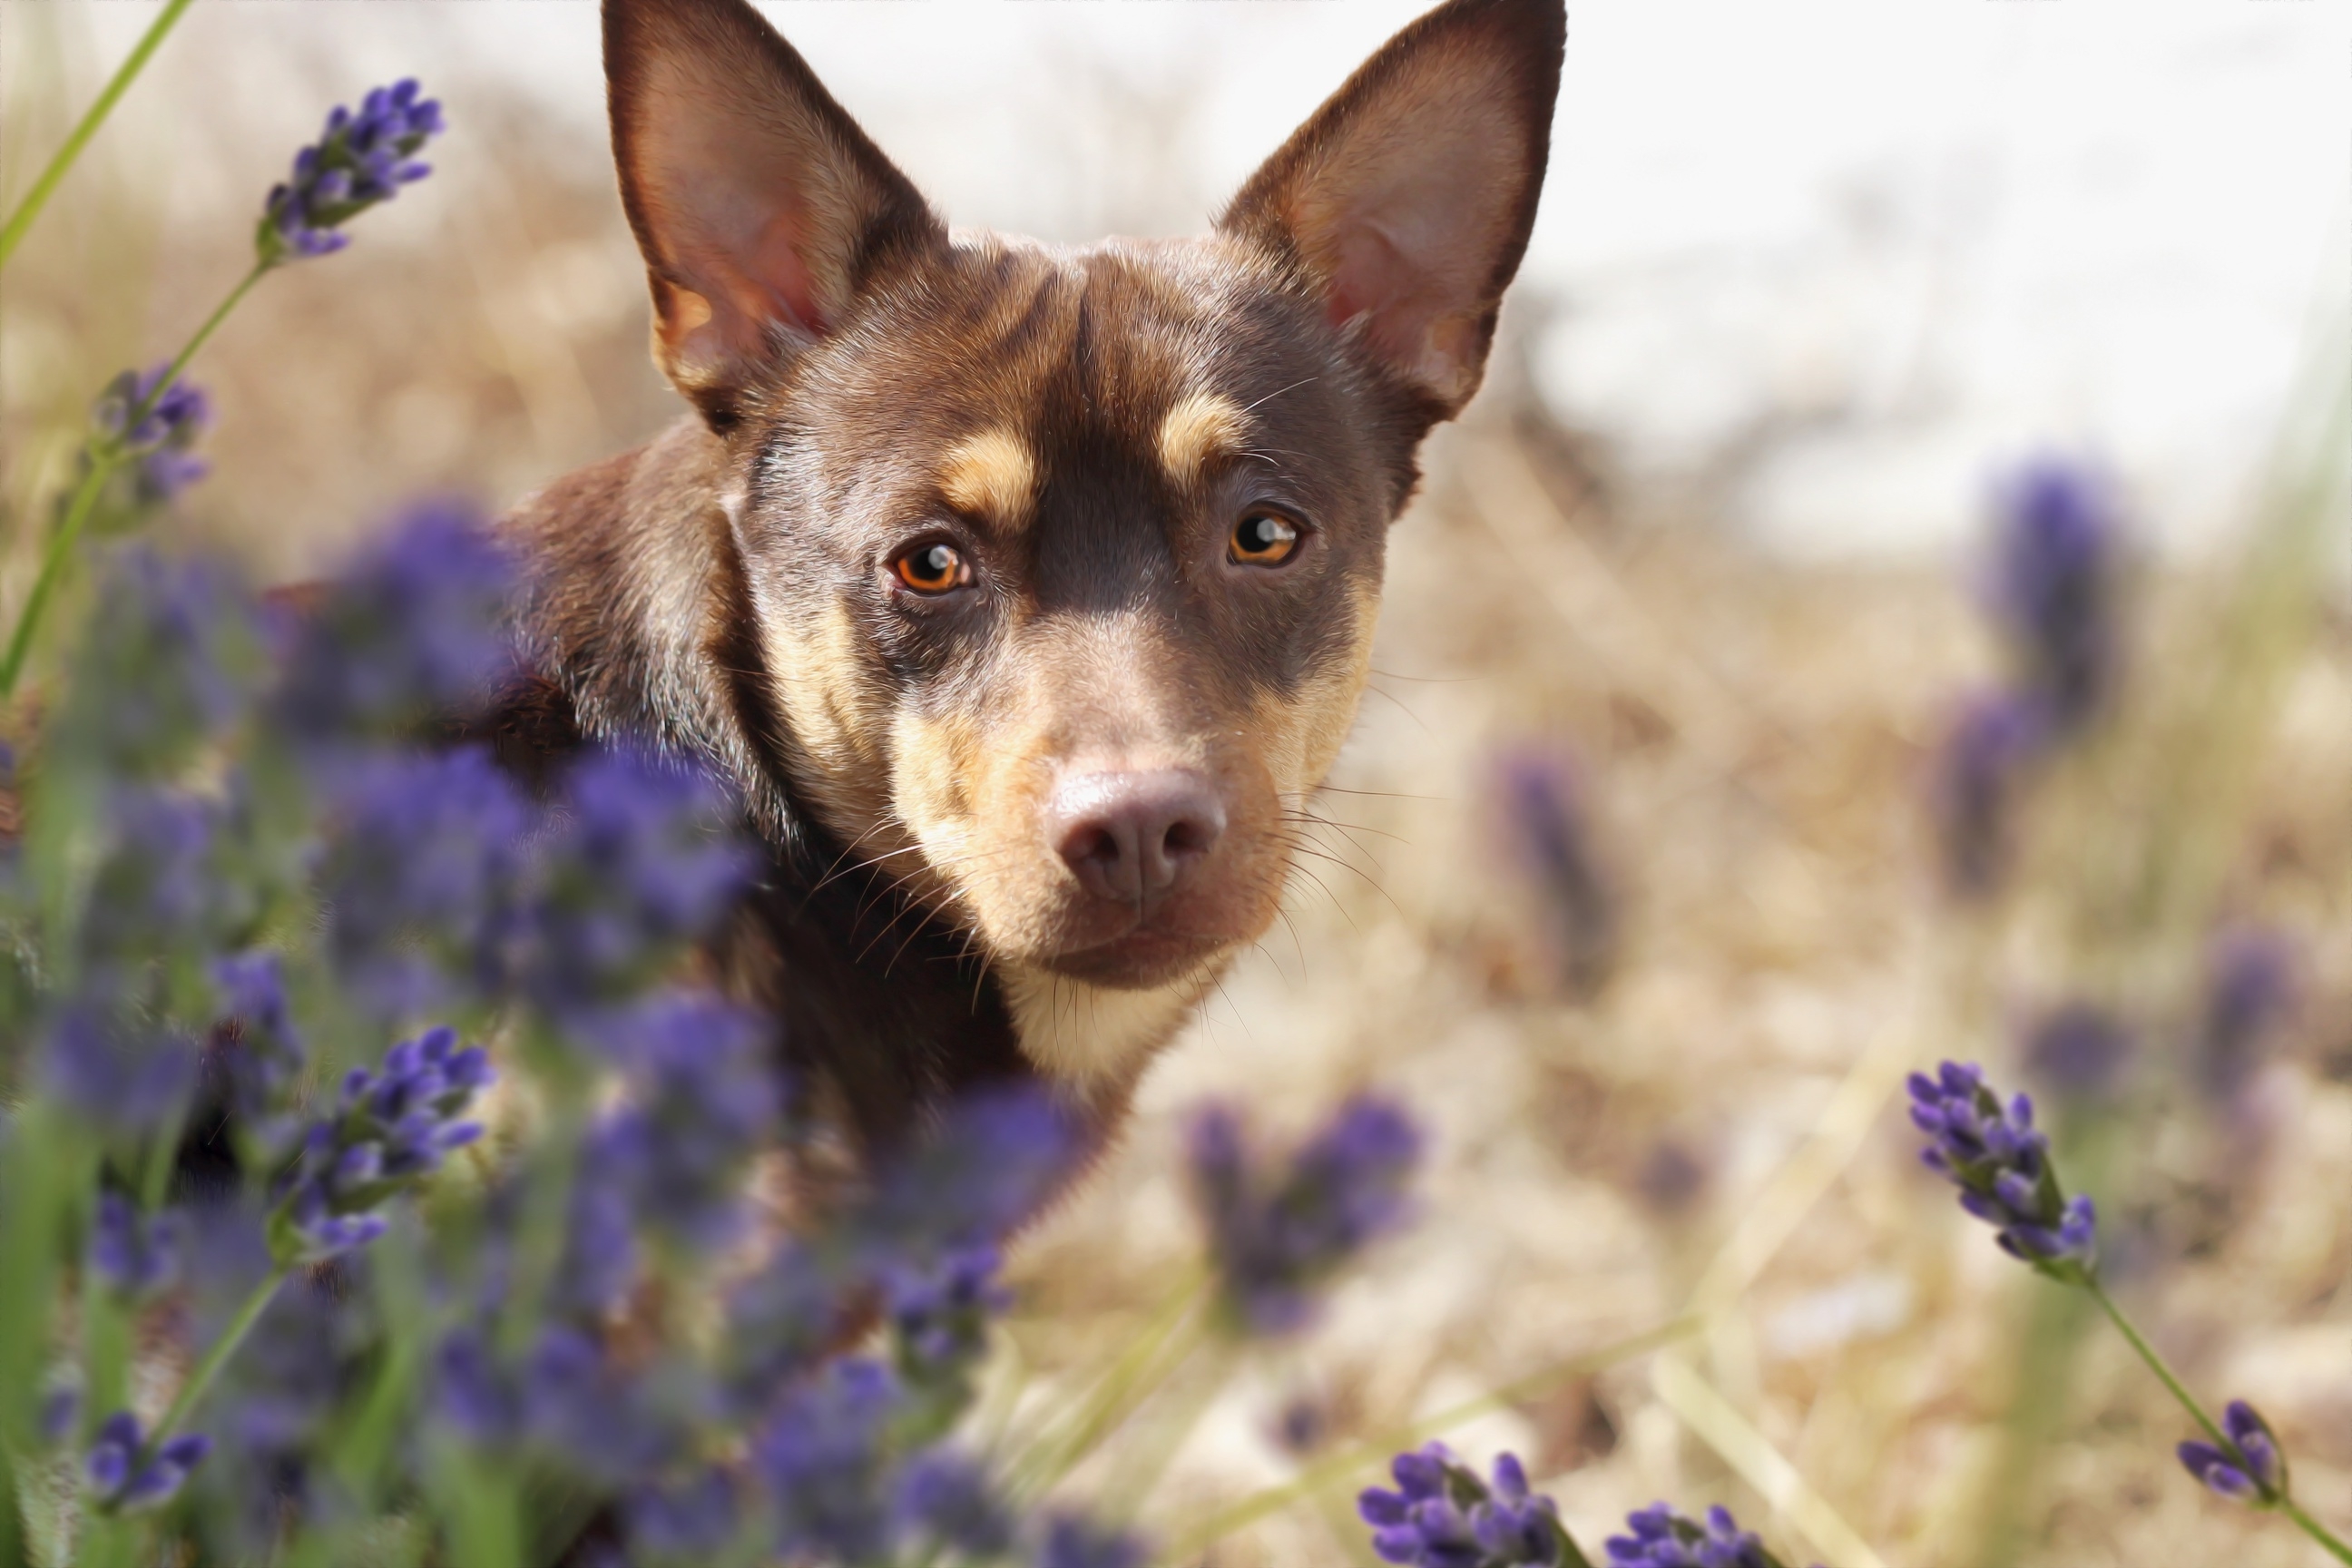 Фото обои собака, глядя, пурпурные цветы, милая, собаки - бесплатные картинки на Fonwall